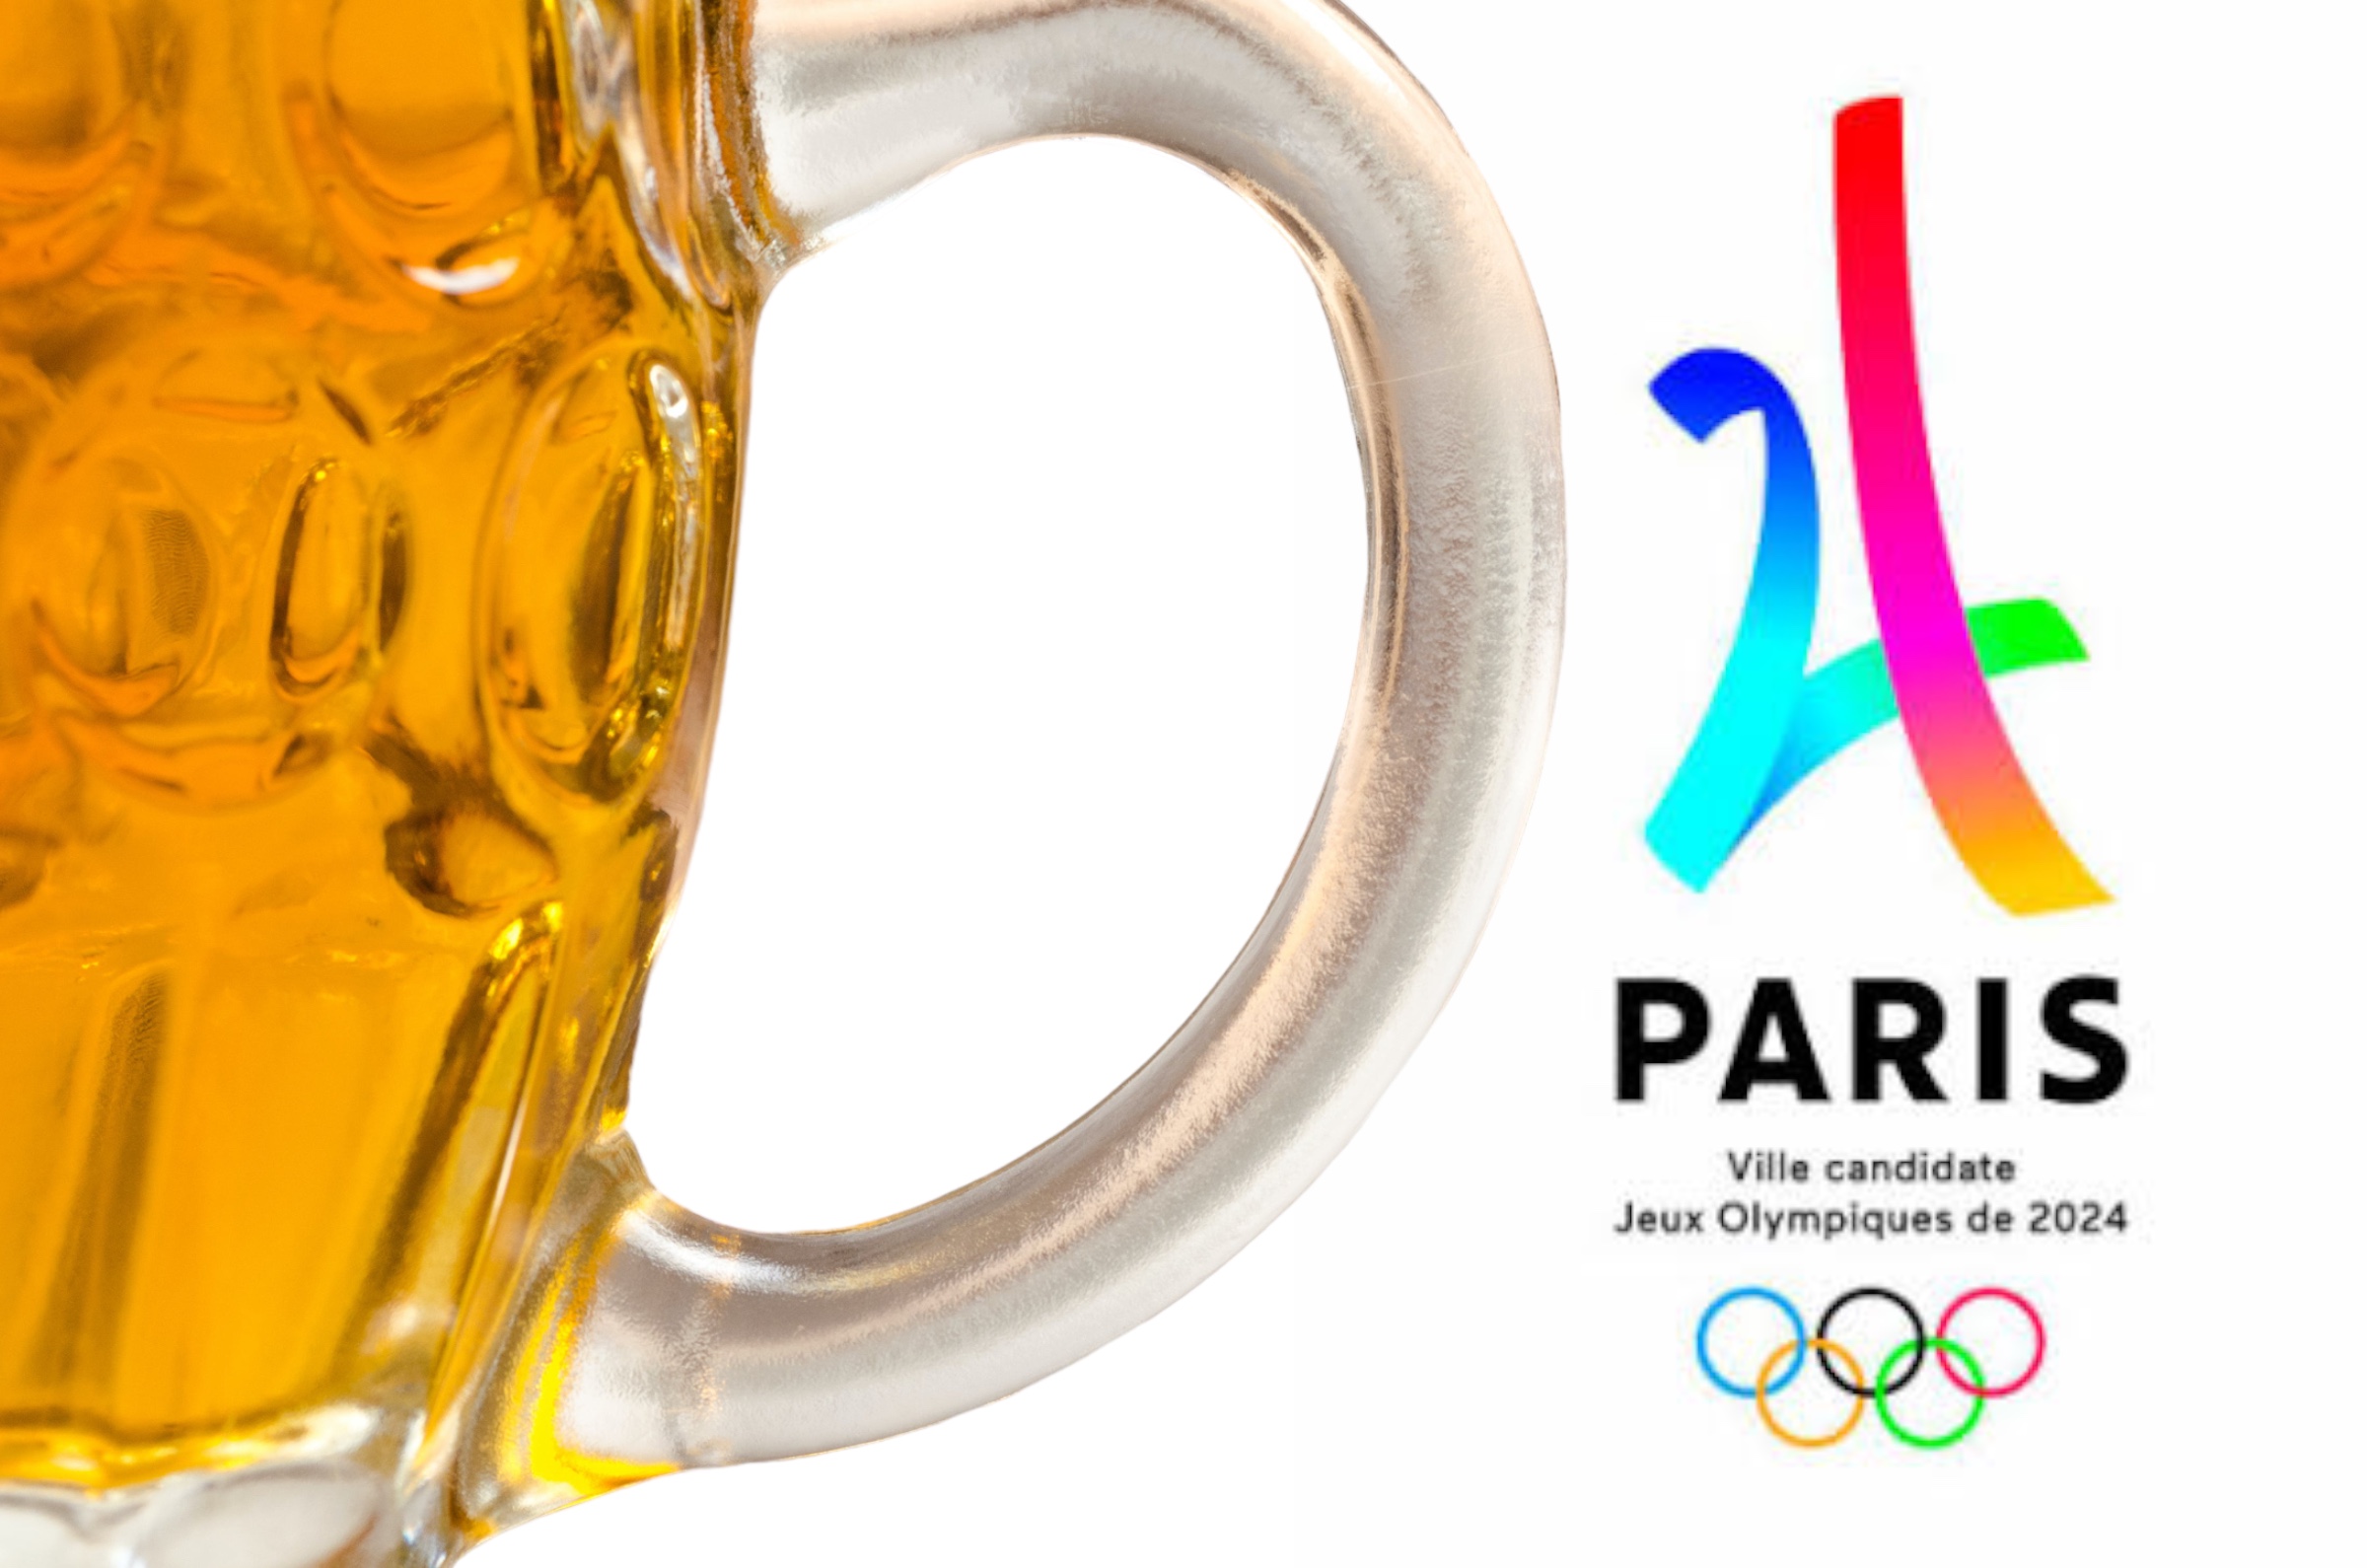 La cerveza oficial de las Olimpiadas París 2024 es mexicana